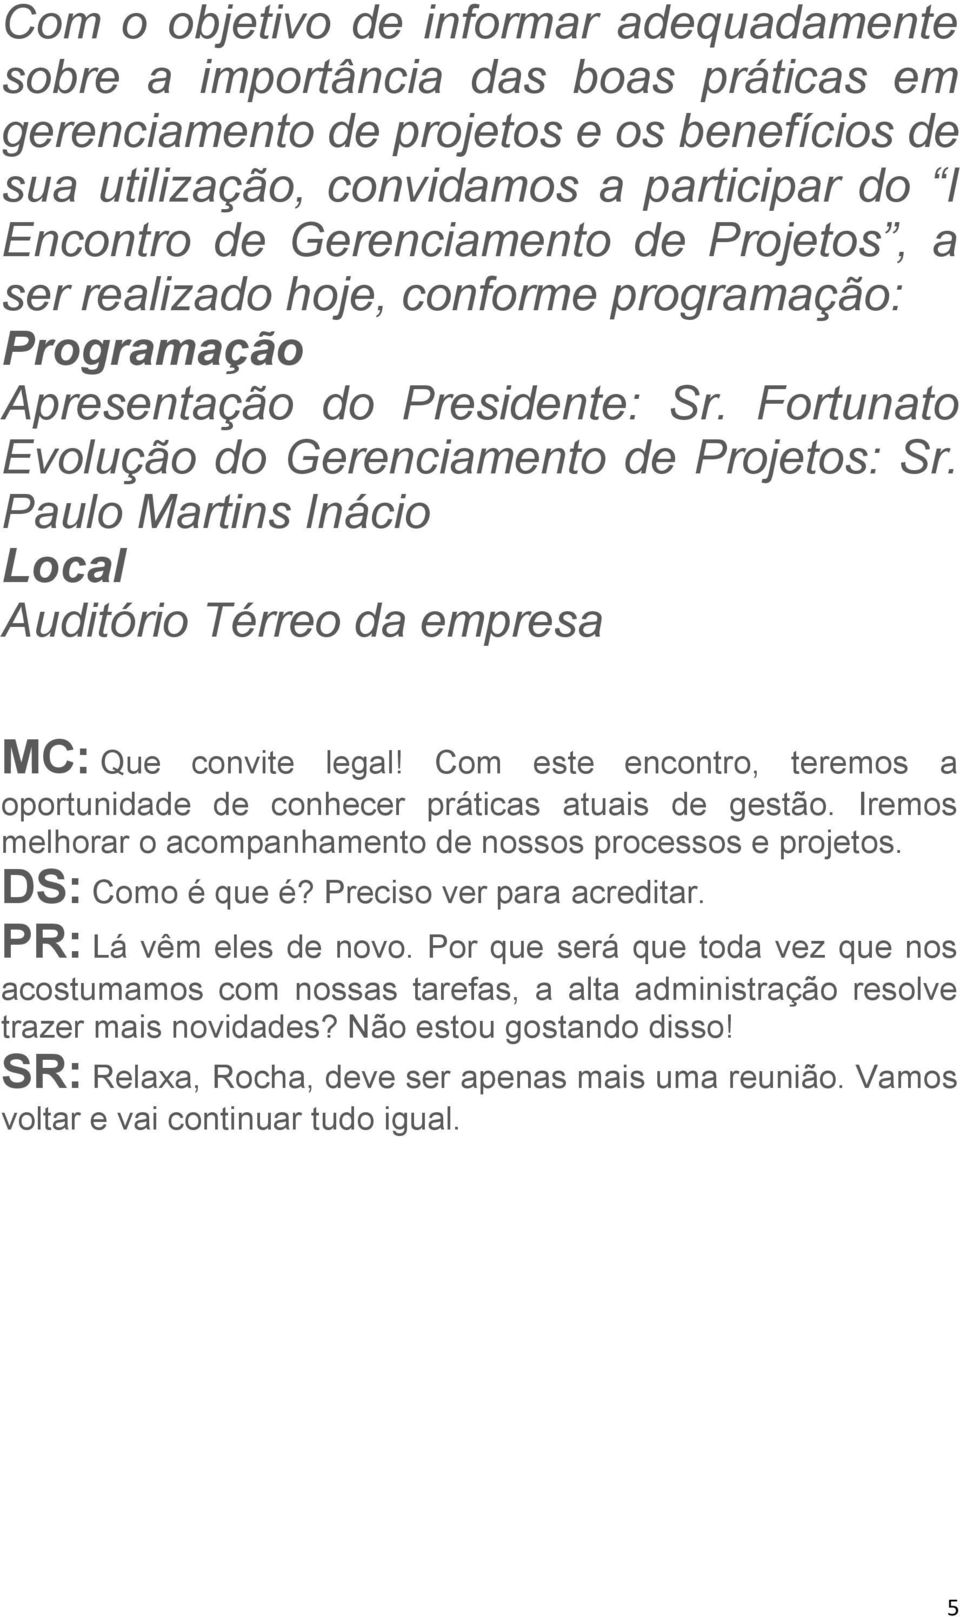 Paulo Martins Inácio Local Auditório Térreo da empresa MC: Que convite legal! Com este encontro, teremos a oportunidade de conhecer práticas atuais de gestão.